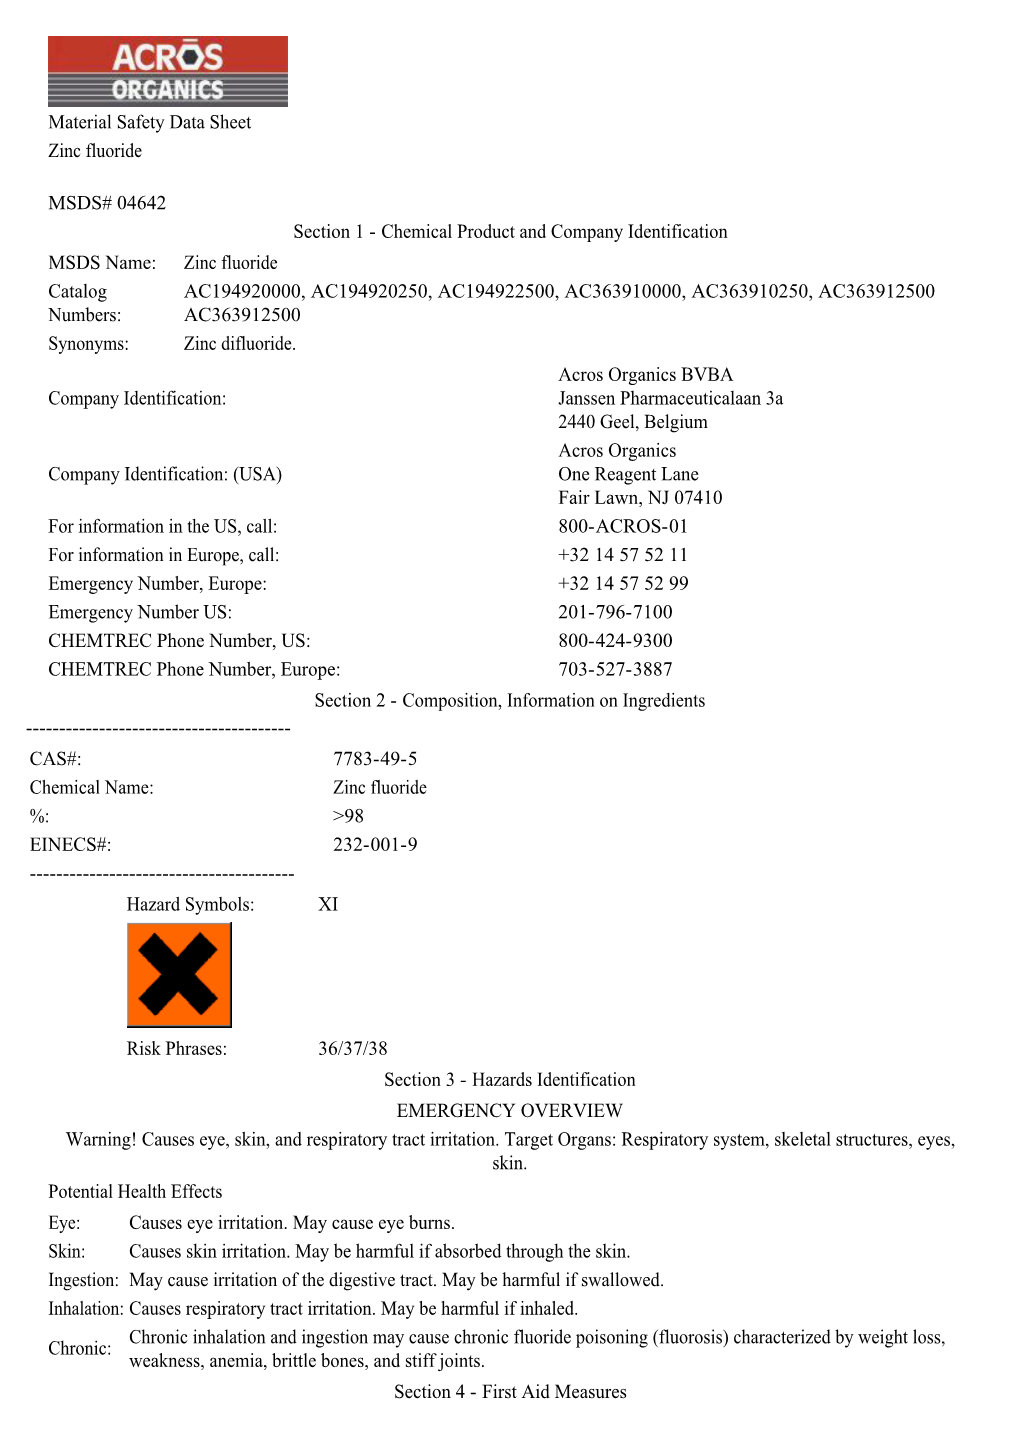 Material Safety Data Sheet Zinc Fluoride MSDS# 04642